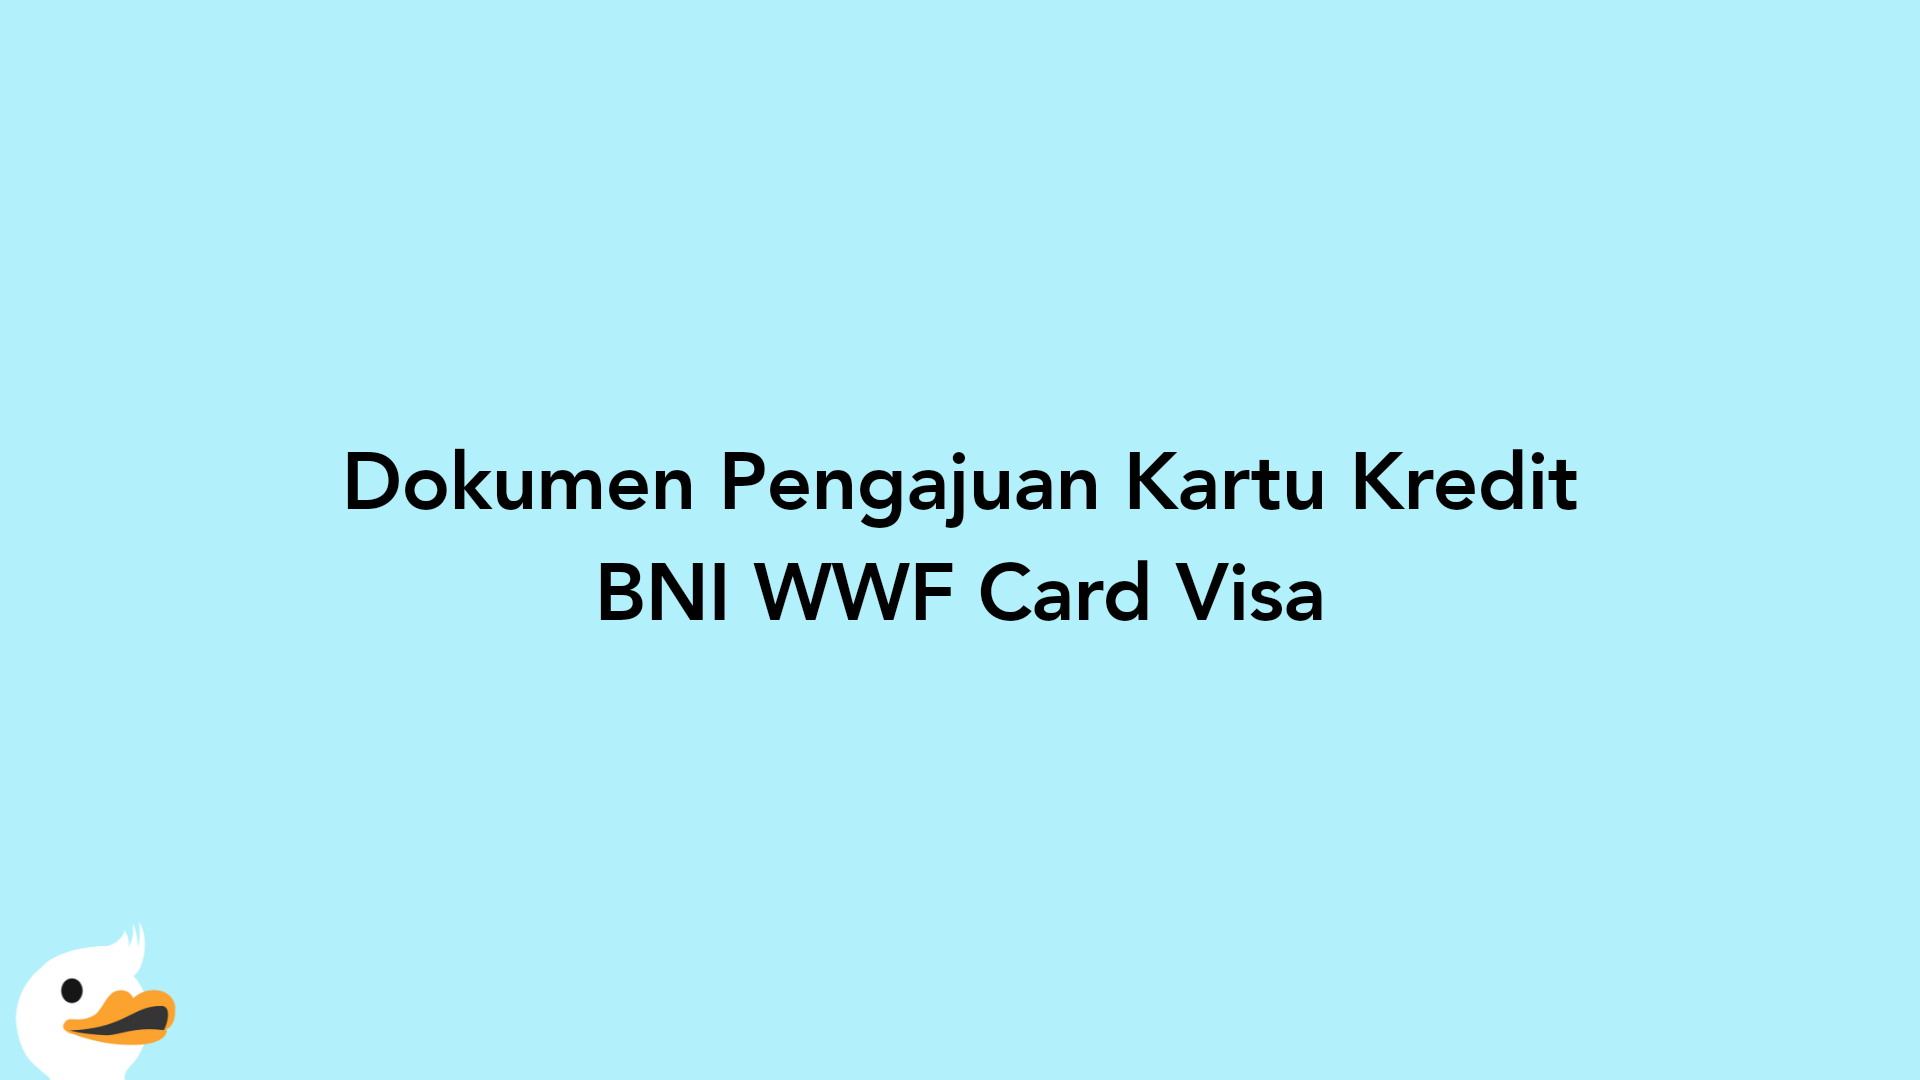 Dokumen Pengajuan Kartu Kredit BNI WWF Card Visa